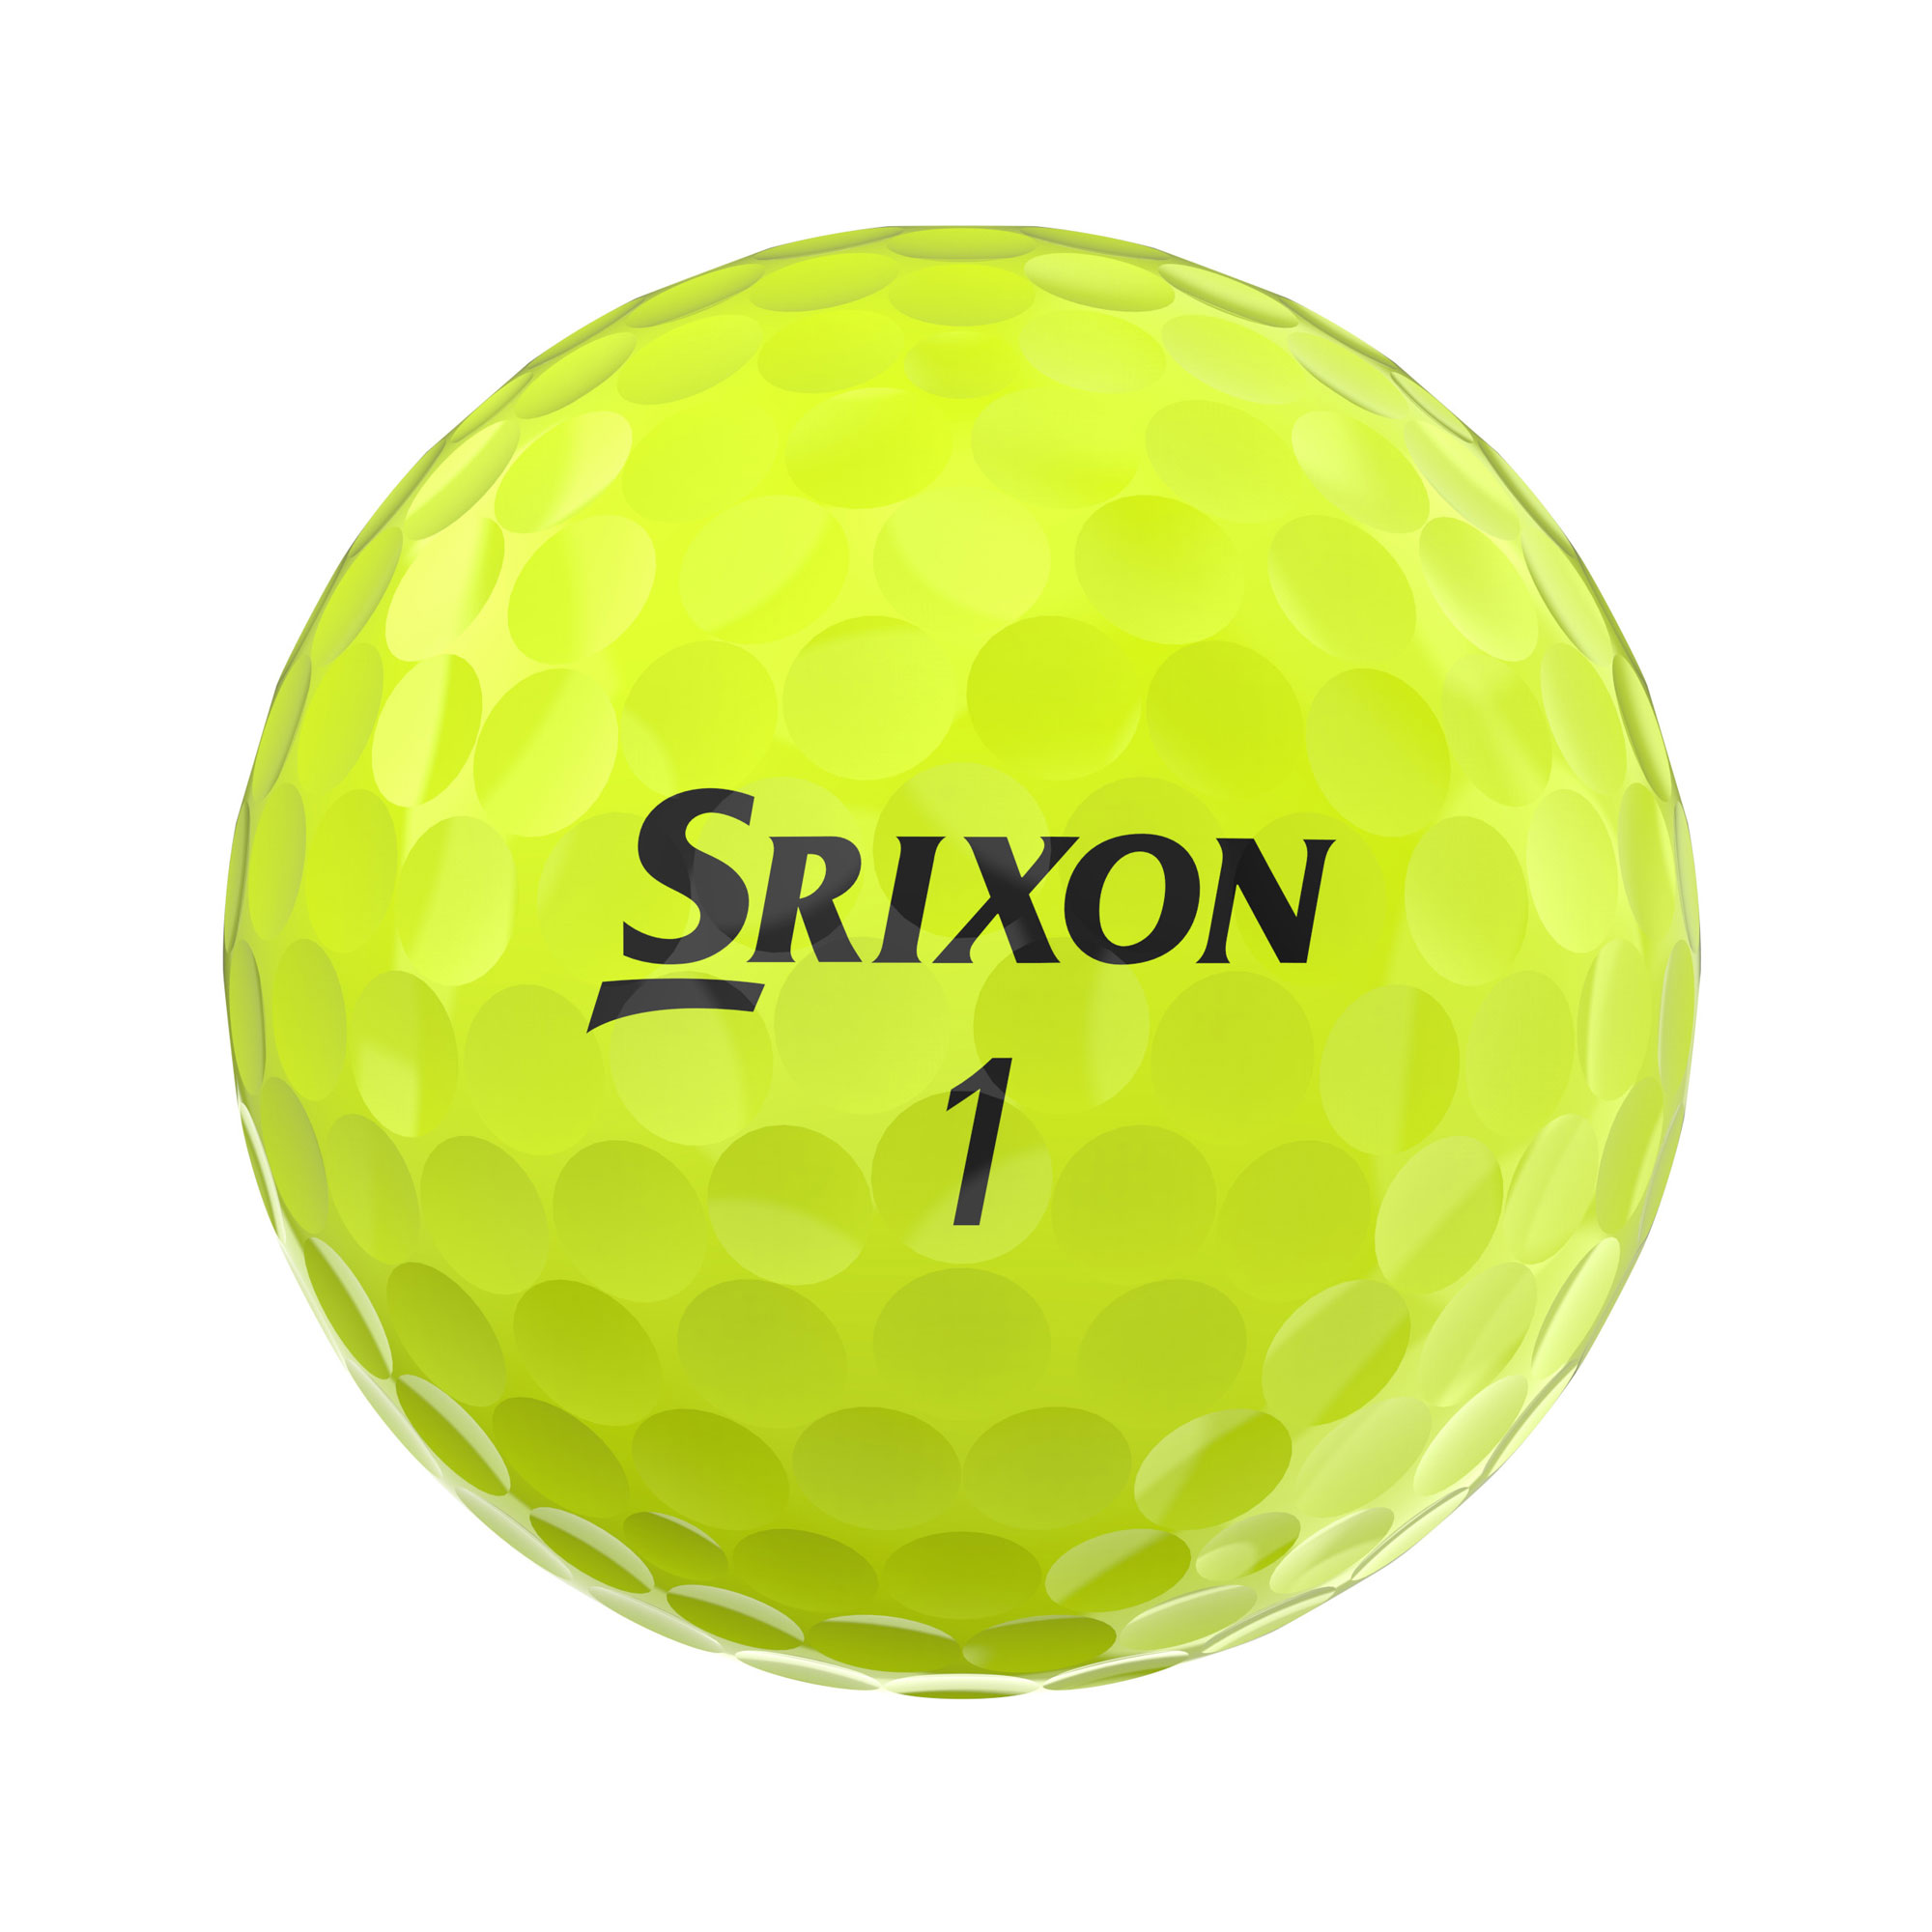 Srixon Soft Feel Golfbälle bedruckt, gelb (VPE à 12 Bälle)